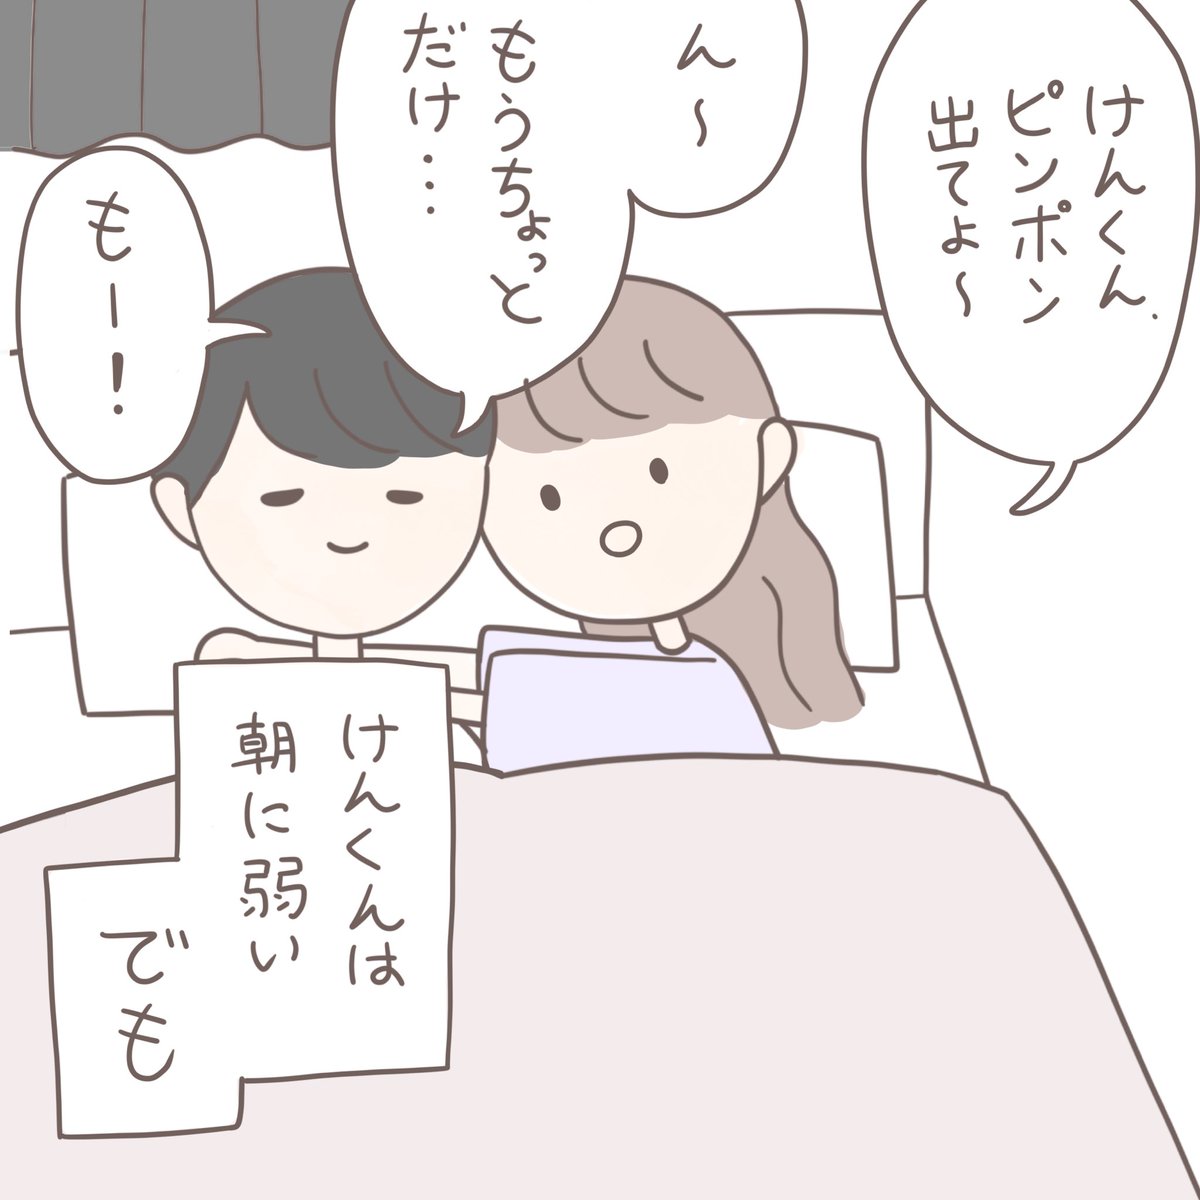 Usagi ほのぼの恋愛漫画 いつもの朝に カップル漫画 カップルイラスト T Co Tjtt3y8sfk Twitter